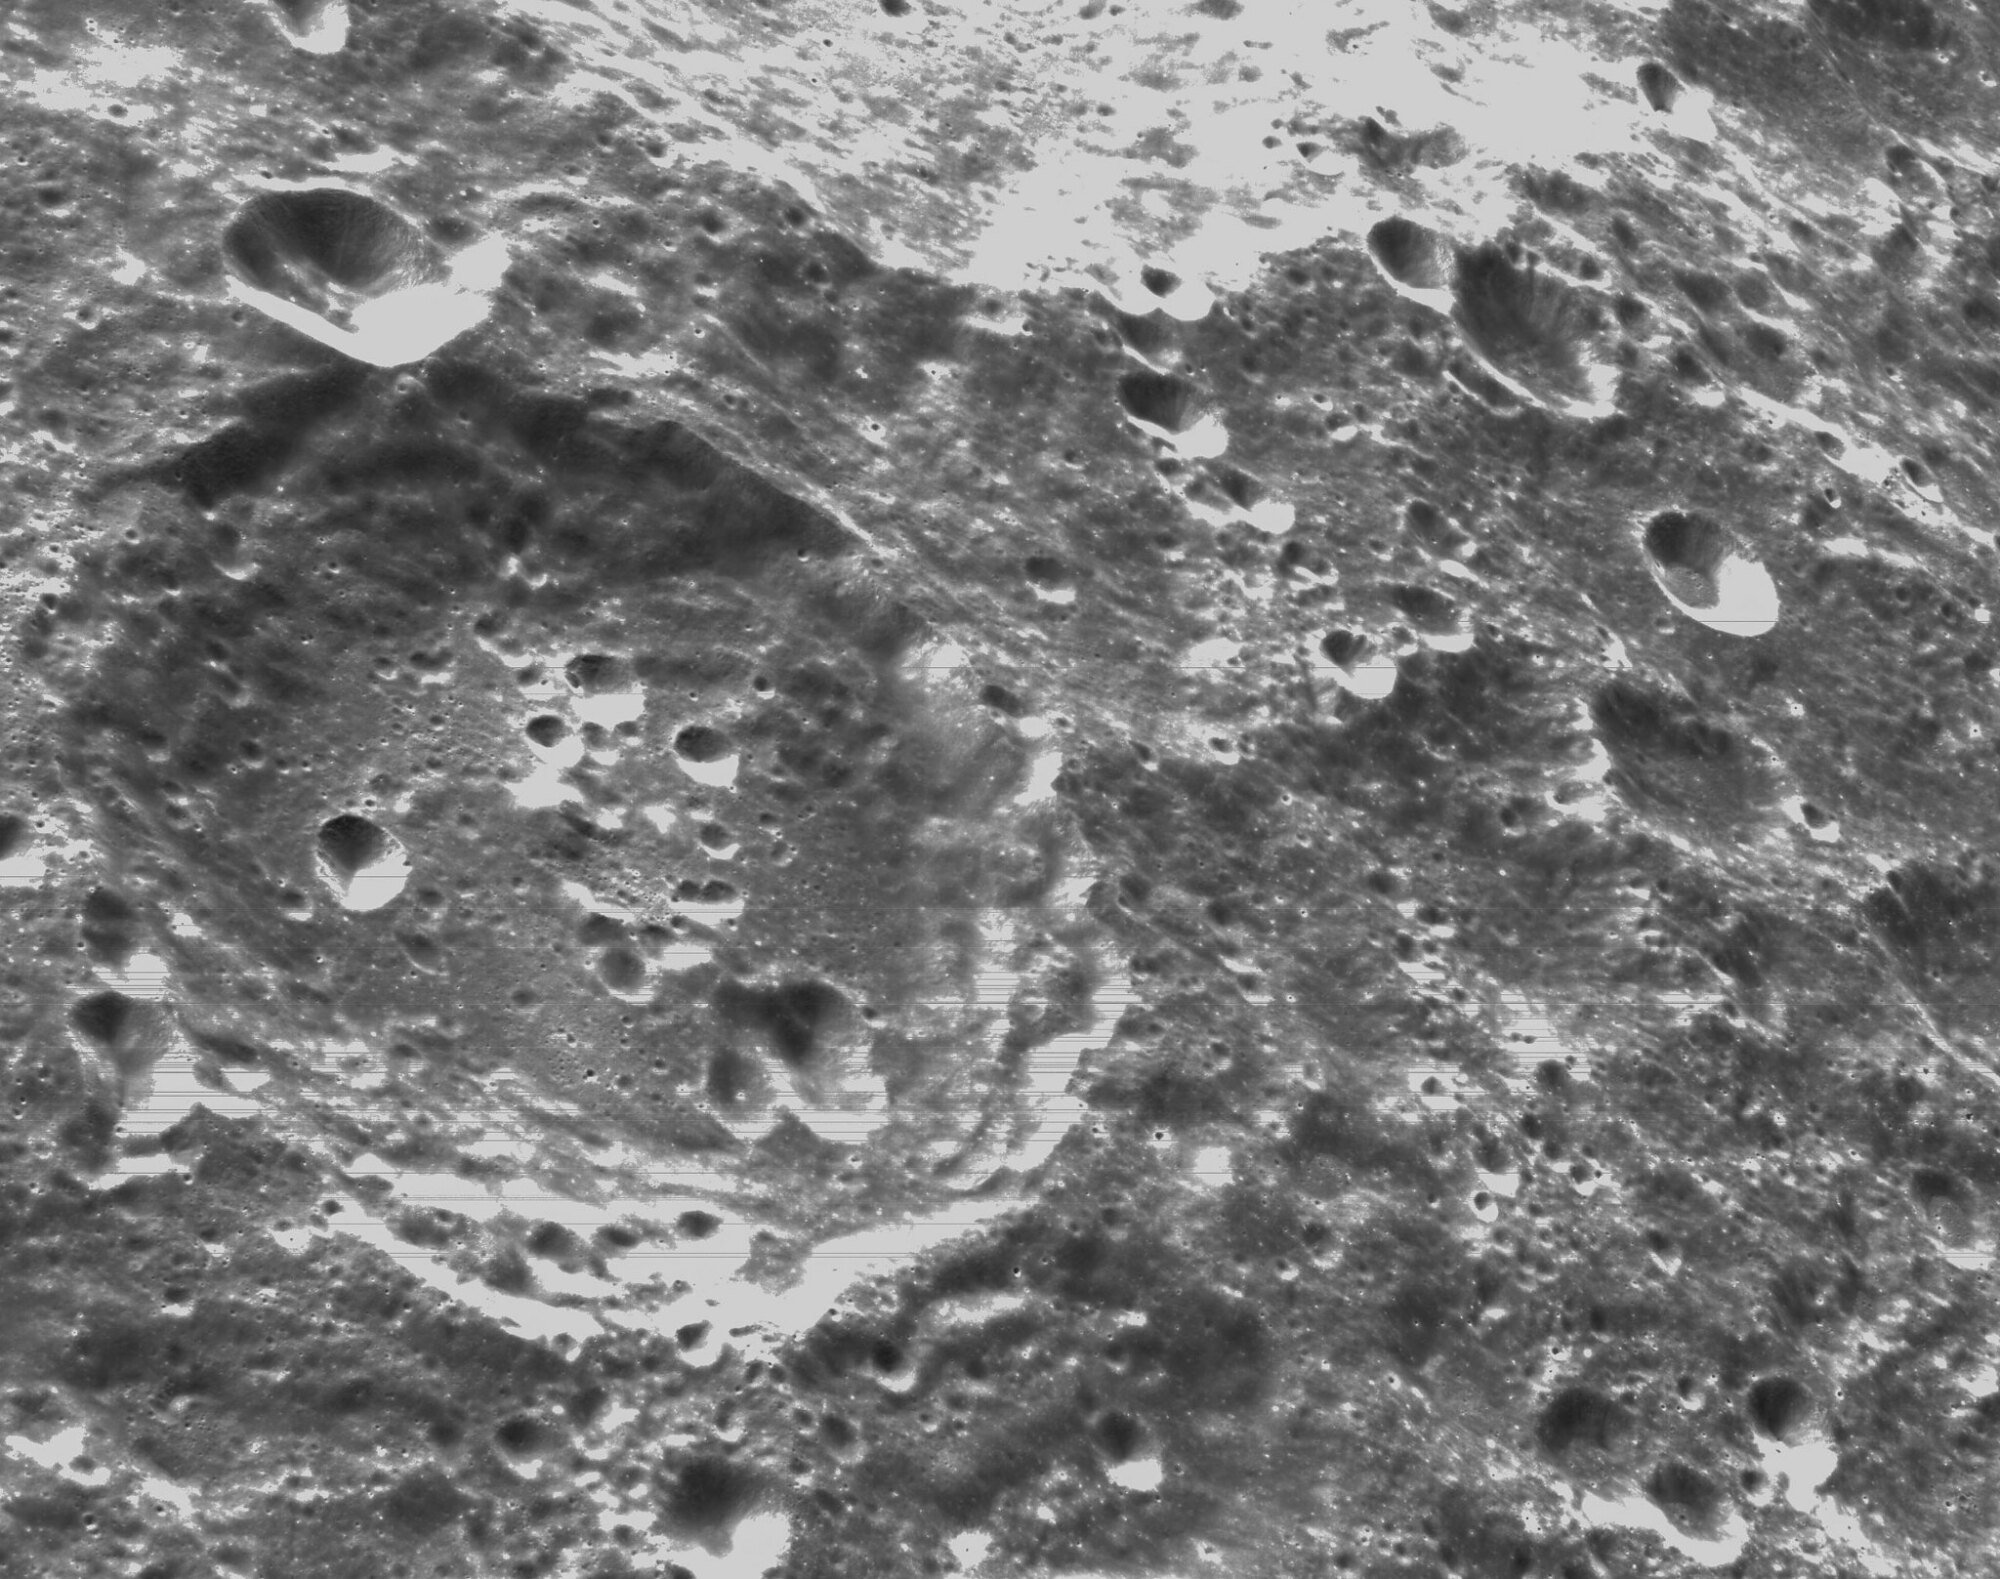 la surface cratérisée de la lune